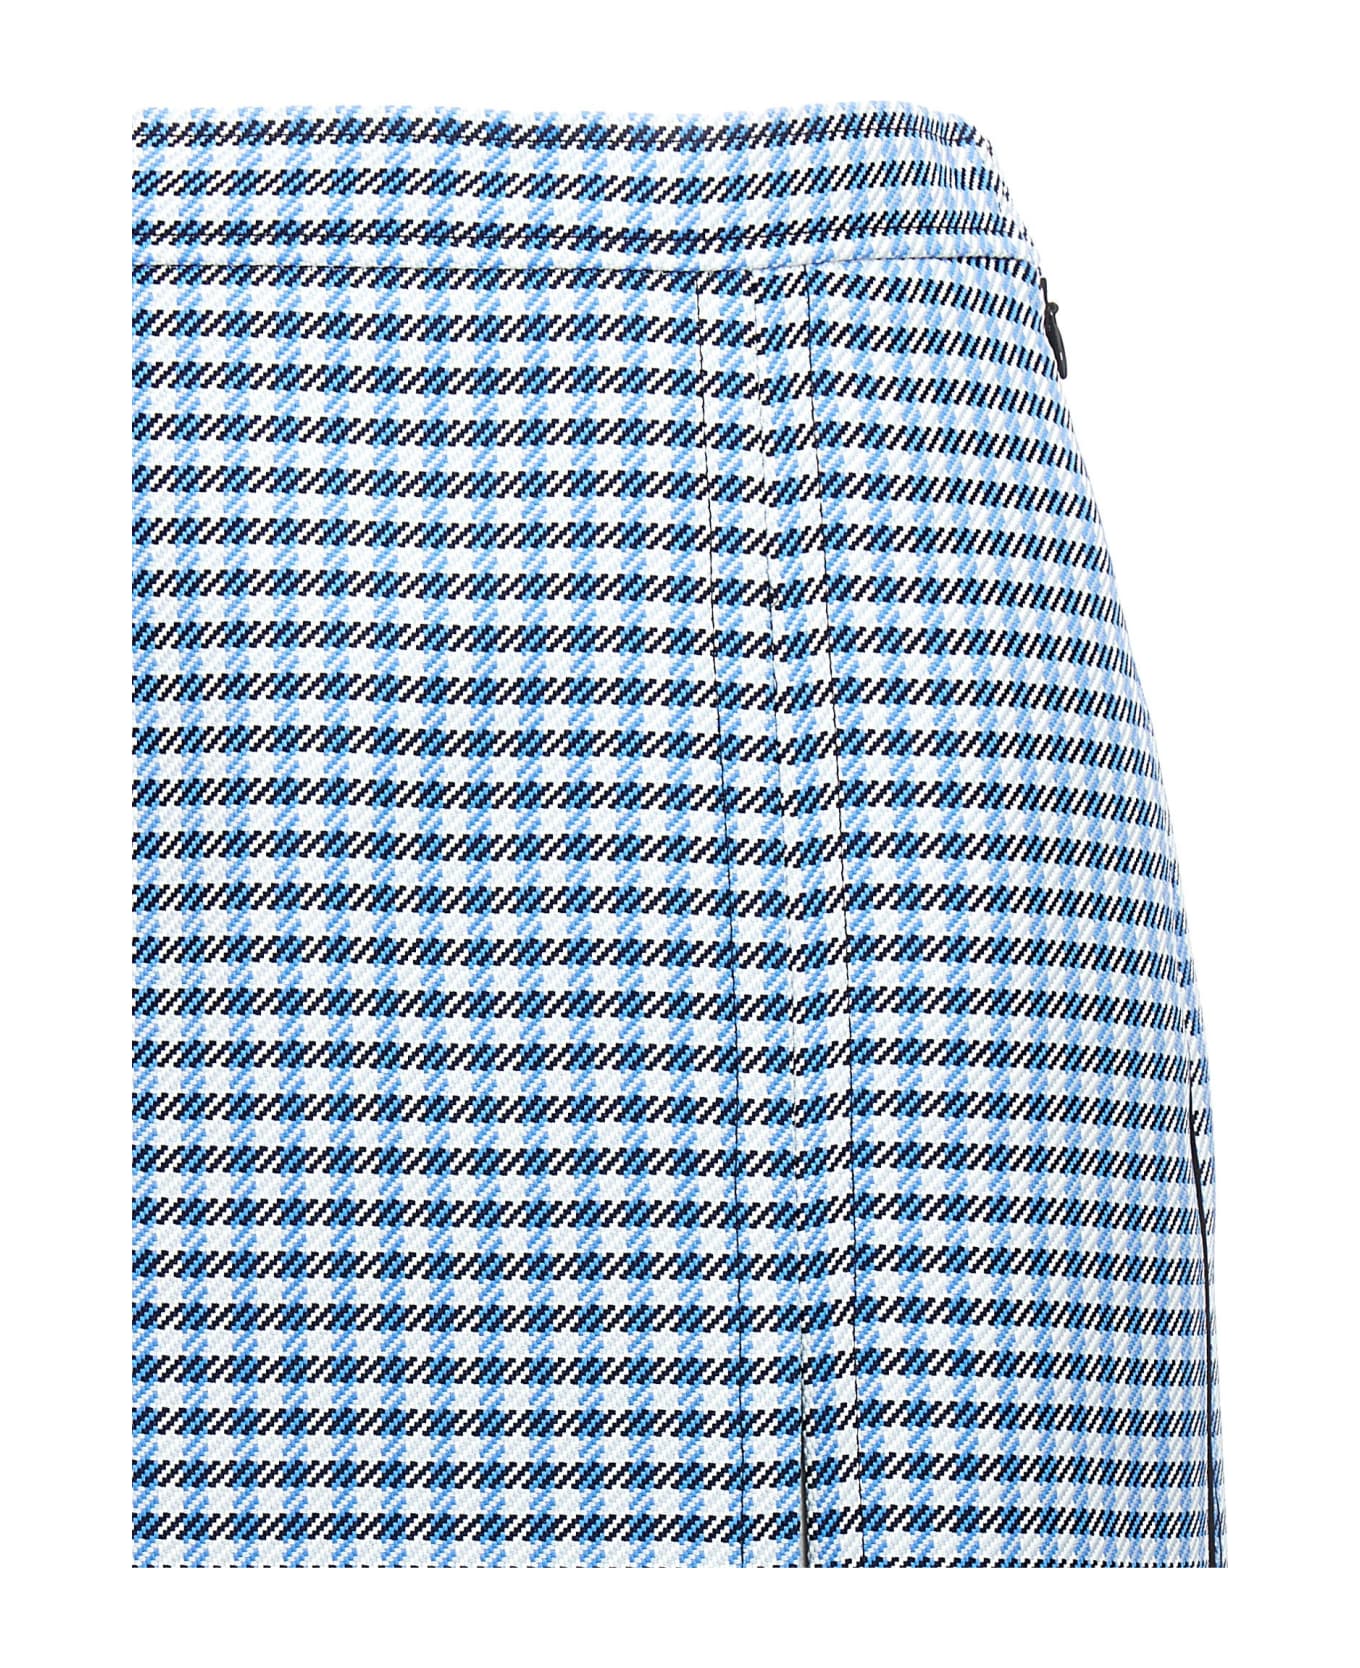 Marni Check Longuette Skirt - Light Blue スカート